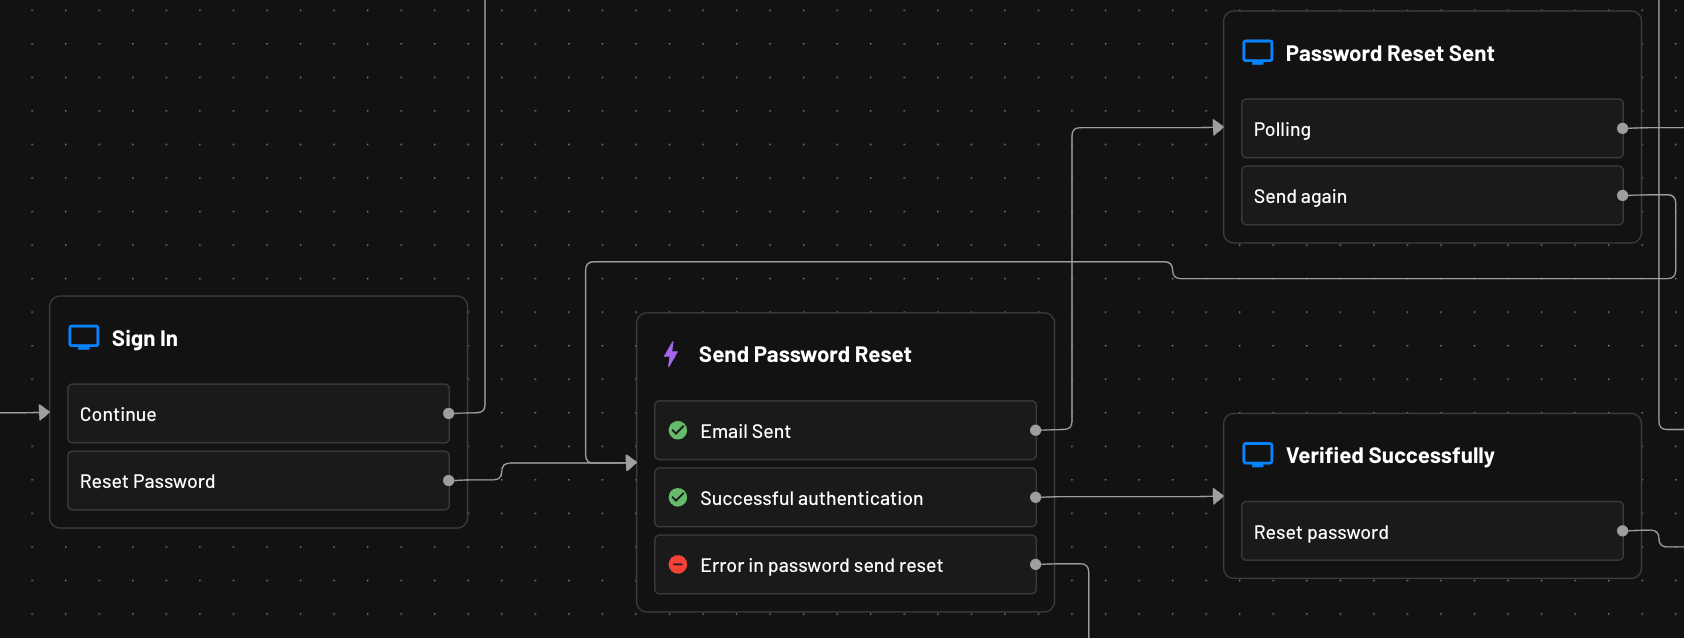 Password Reset Flow Descope